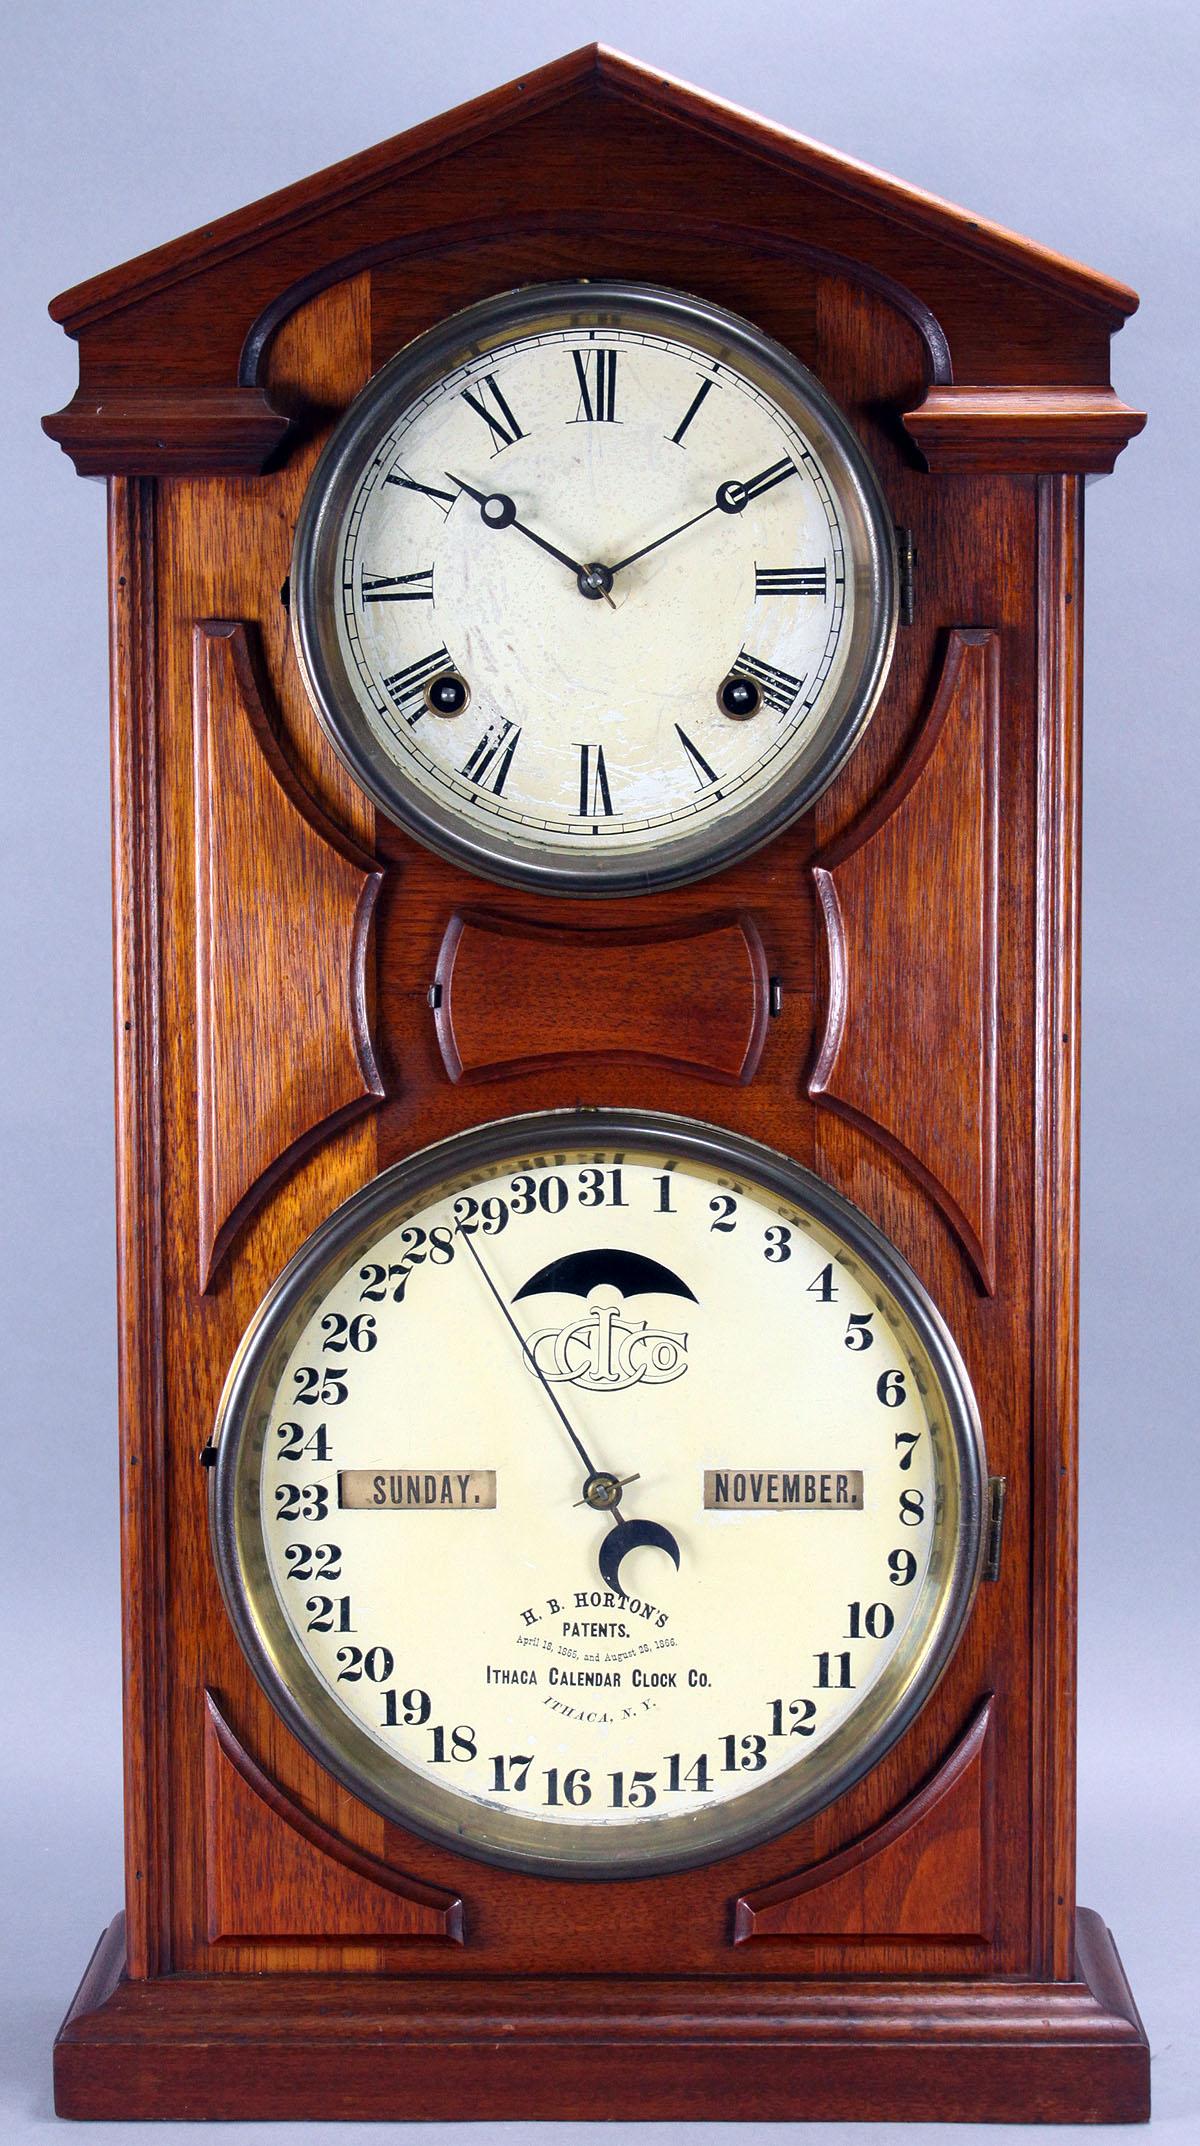 Ithica  "H.B. Horton's Patent" Calendar Clock, Ca. 1870's